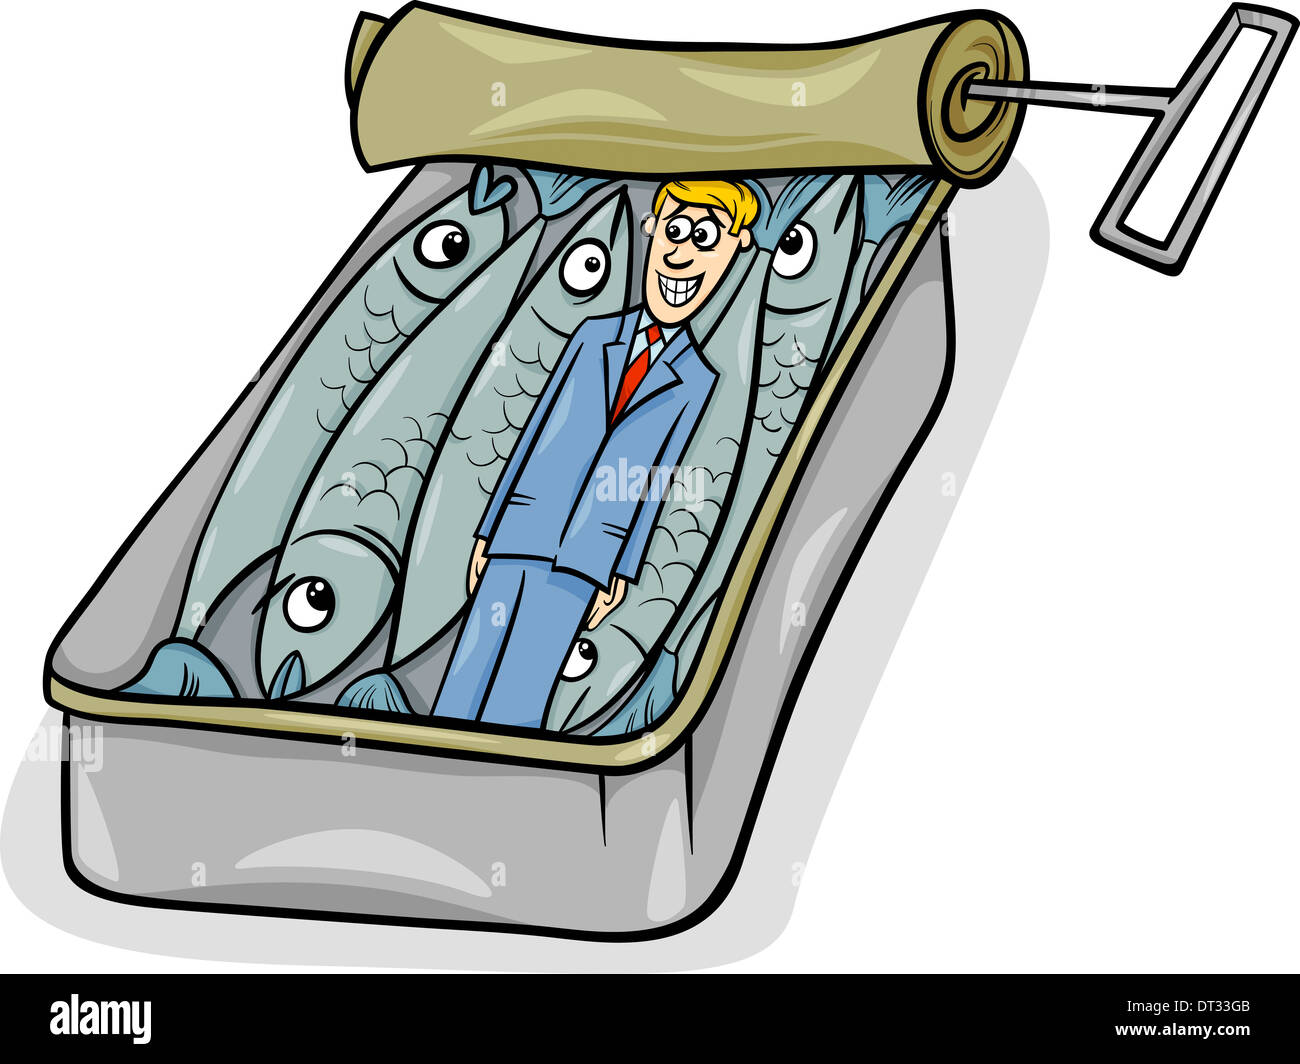 Cartoon umorismo concetto illustrazione del pranzo come sardine dicendo o proverbio Foto Stock